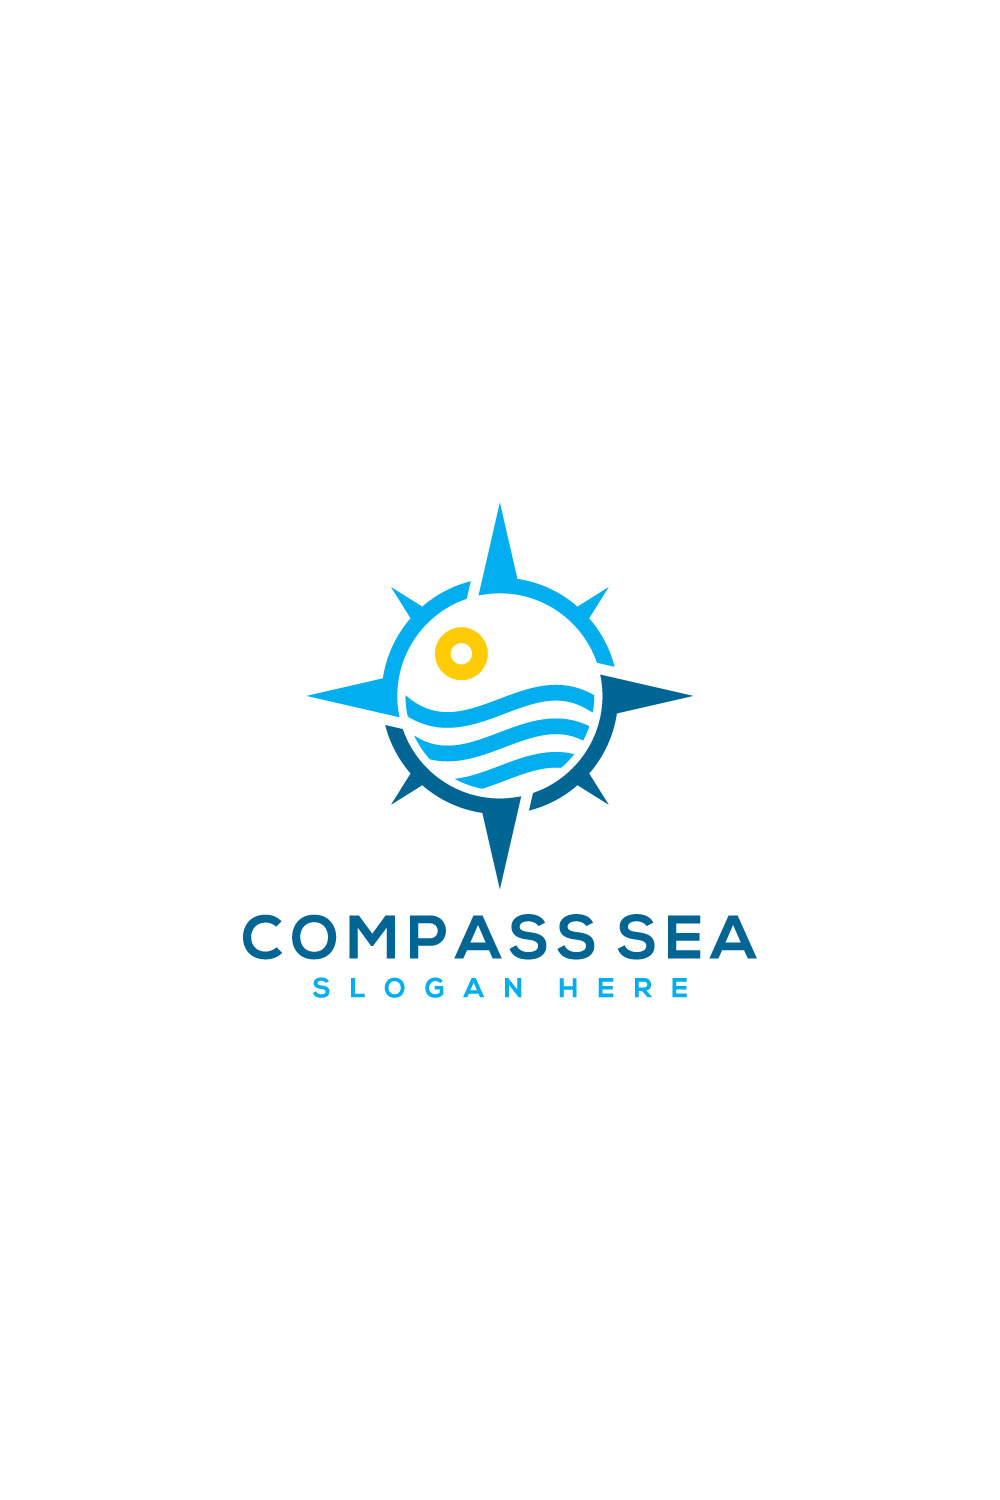 Compass and Sea Logo Vector Design - Pinterest.